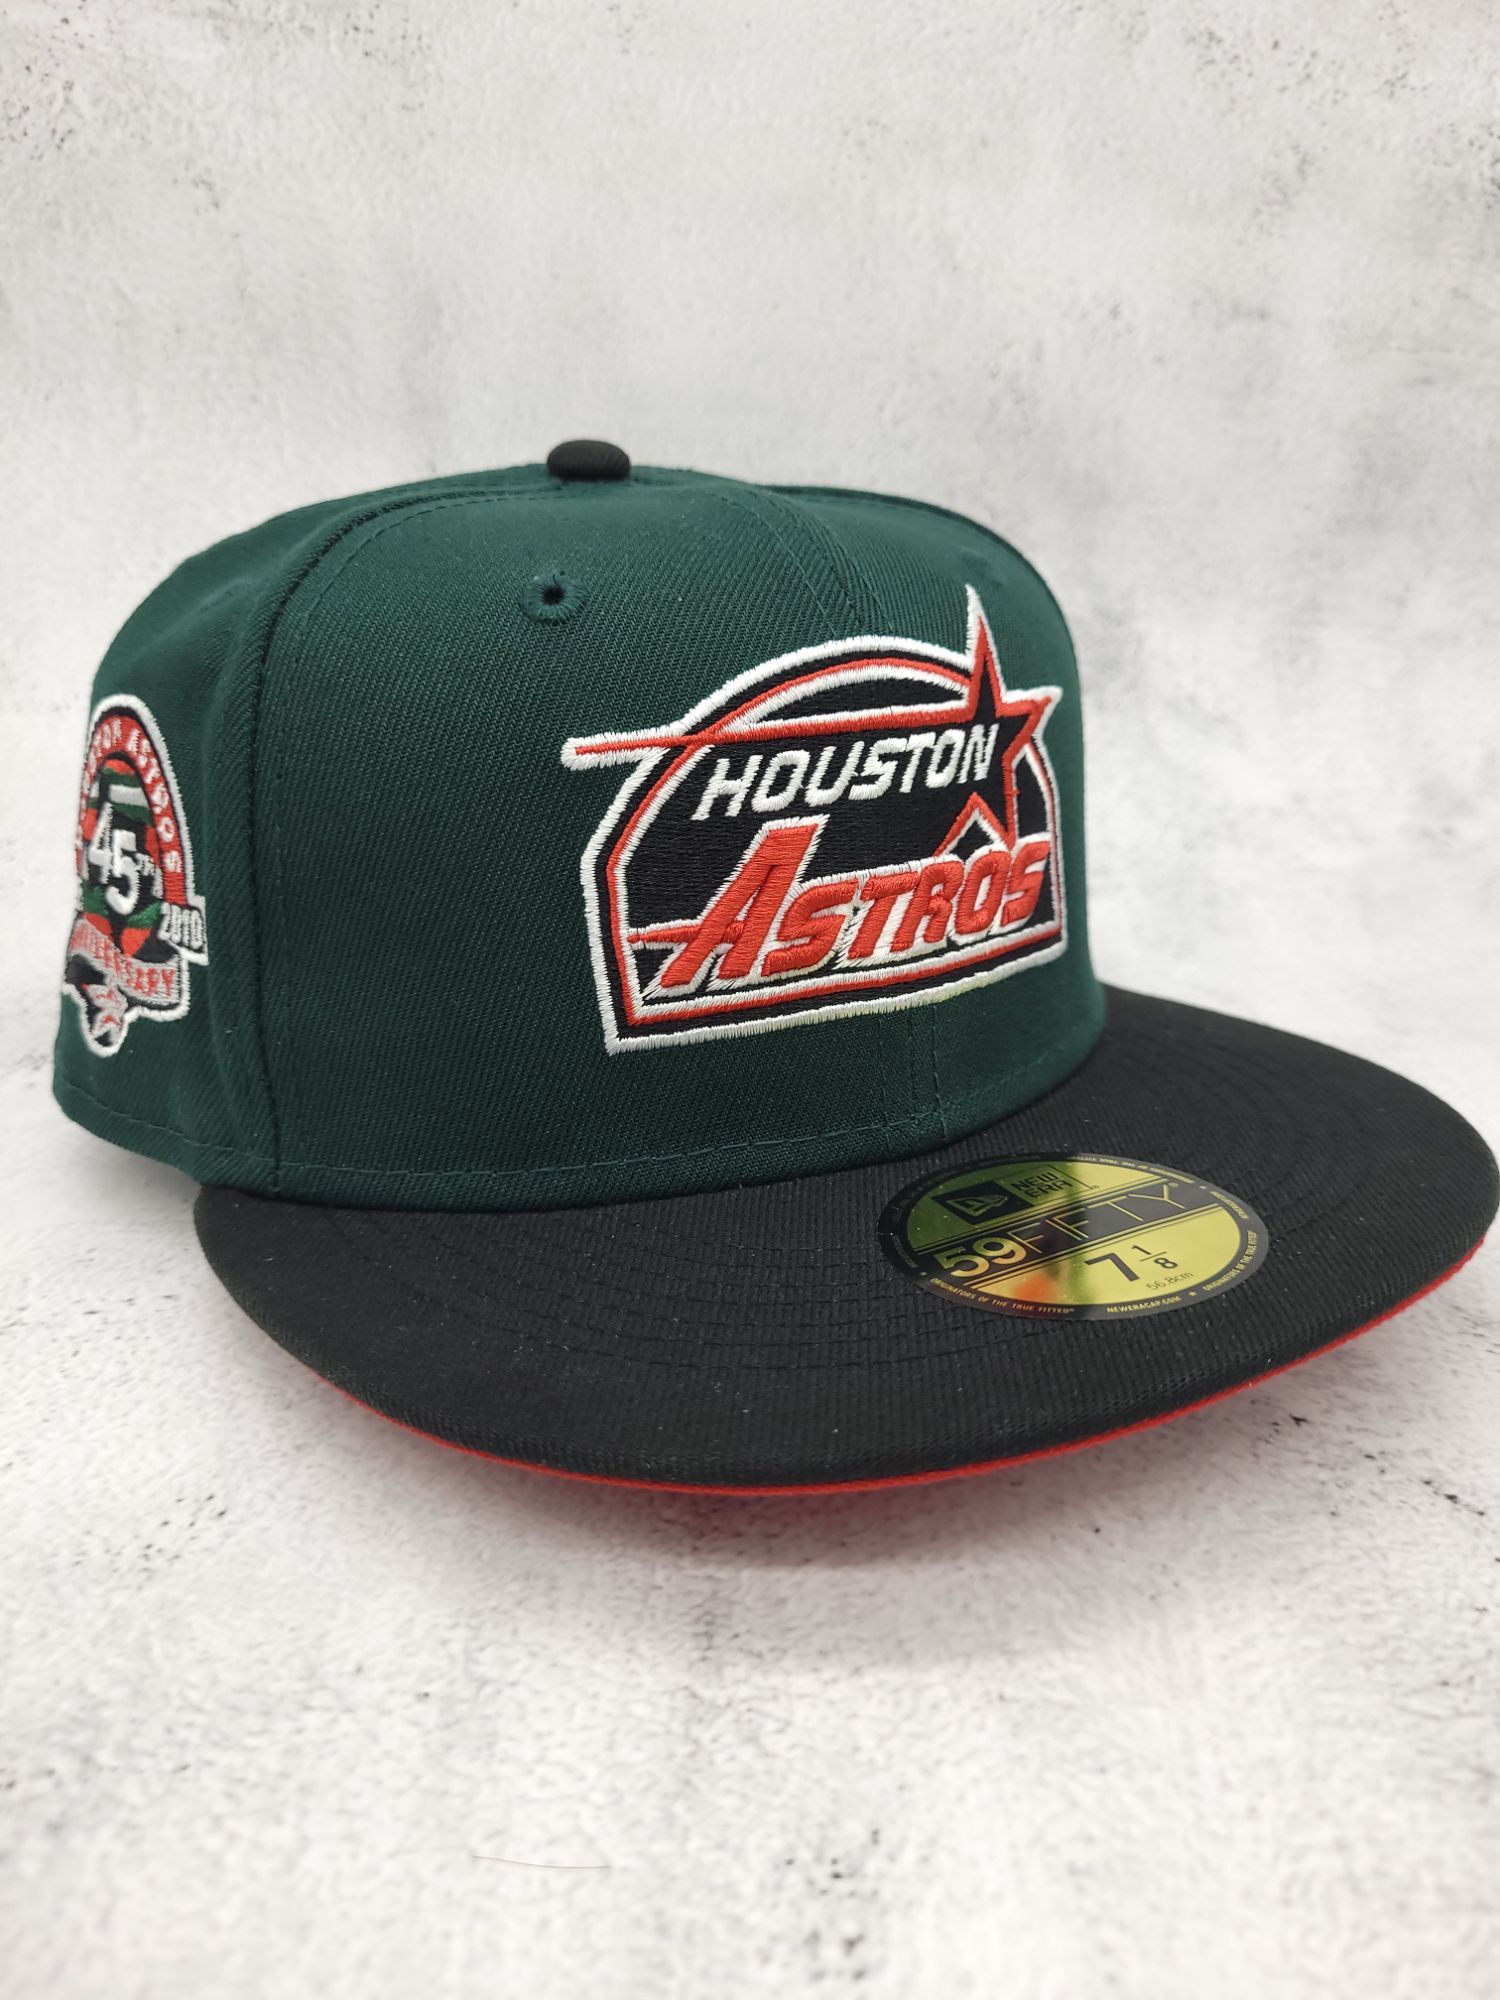 売り出し最安値 NEW ERA ニューエラ HOUSTON ASTROS Heineken - 帽子